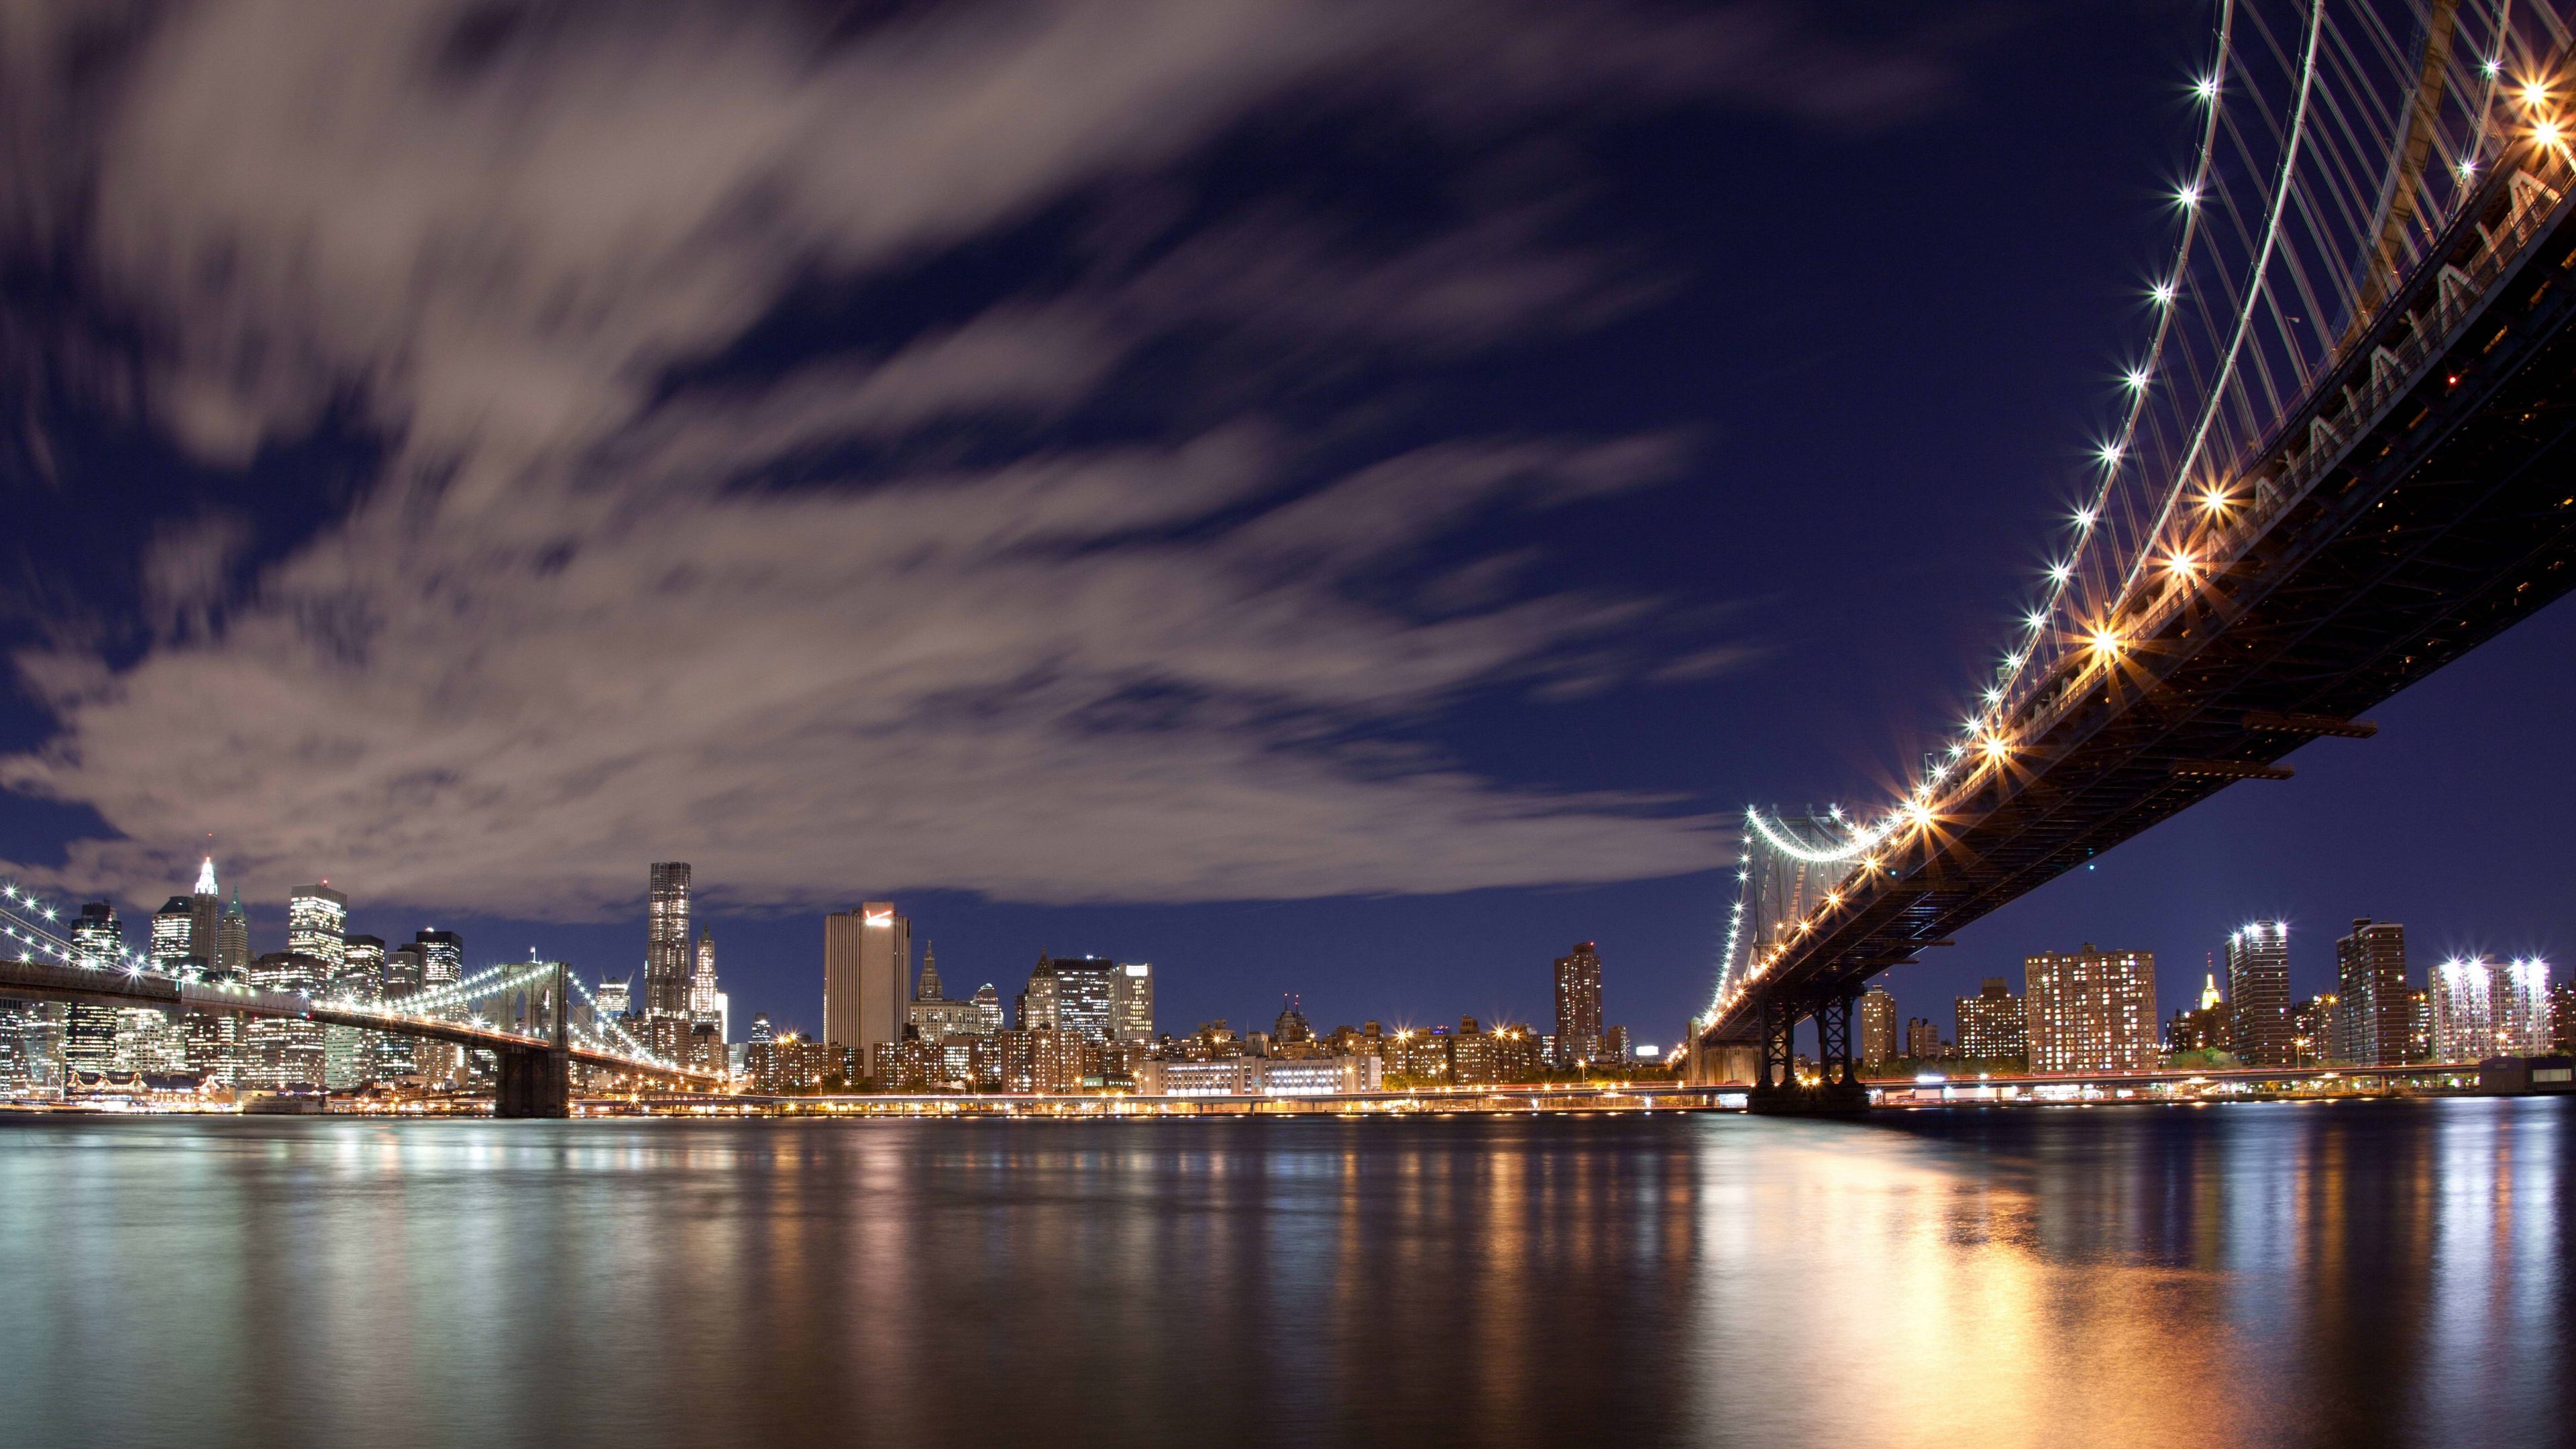 布鲁克林大桥, 城市景观, 城市, 天际线, 里程碑 壁纸 3840x2160 允许